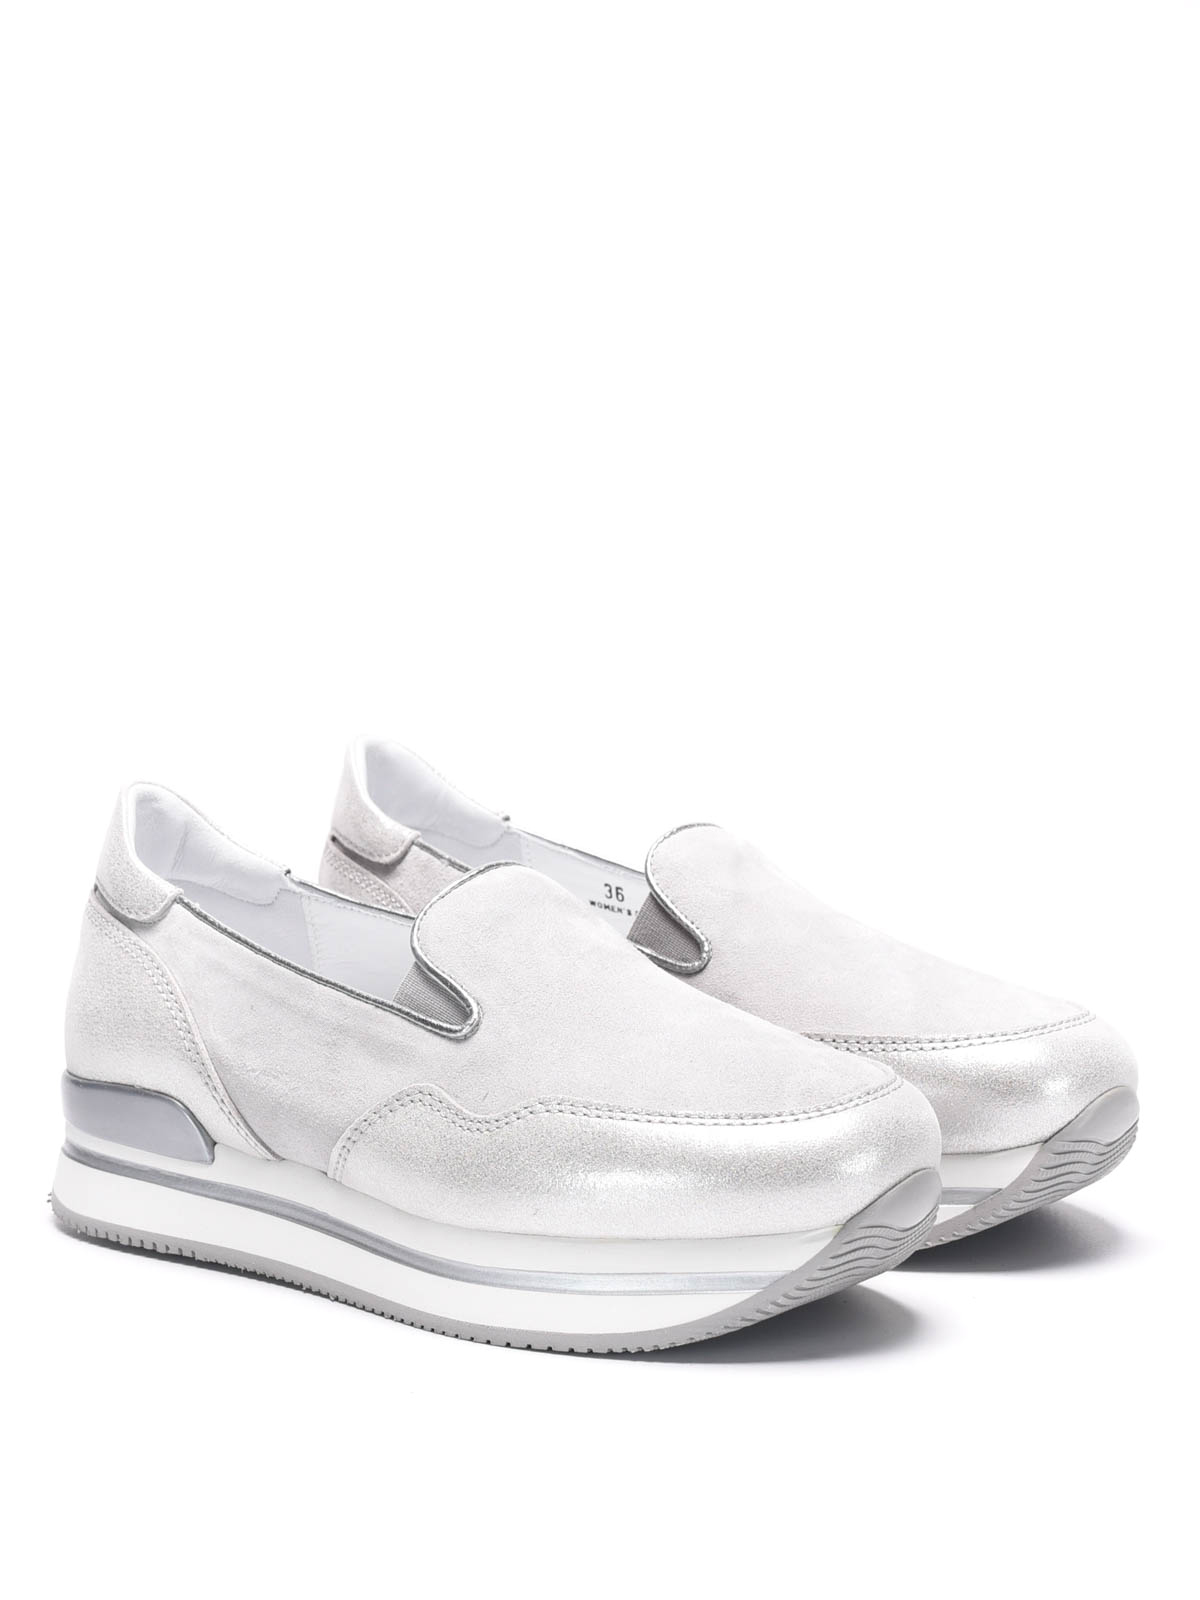 Hogan - H222 slip-on sneakers 